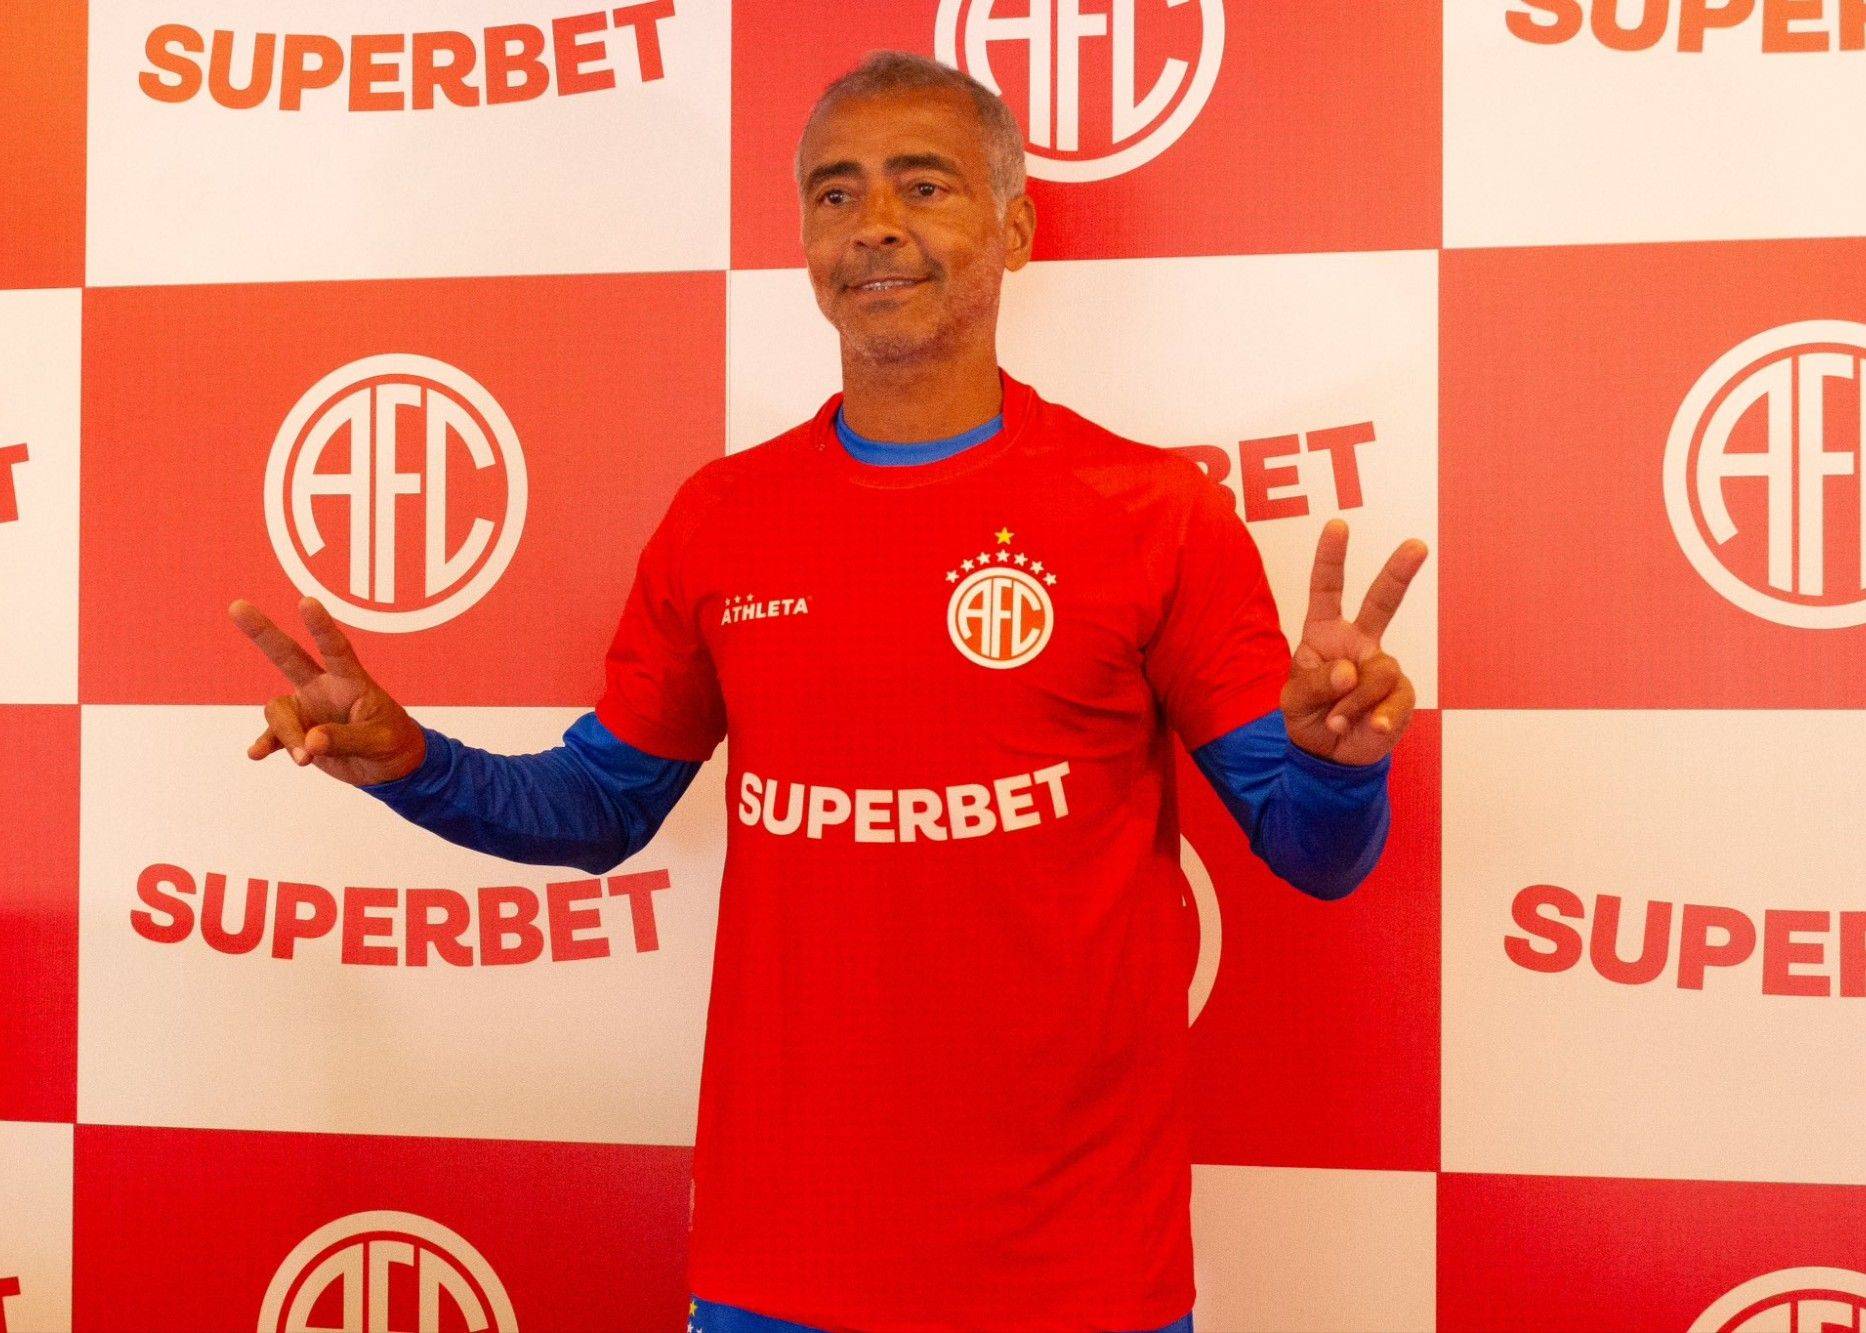 58岁罗马里奥正式宣布复出加盟巴丁球队 将与其子同场竞技